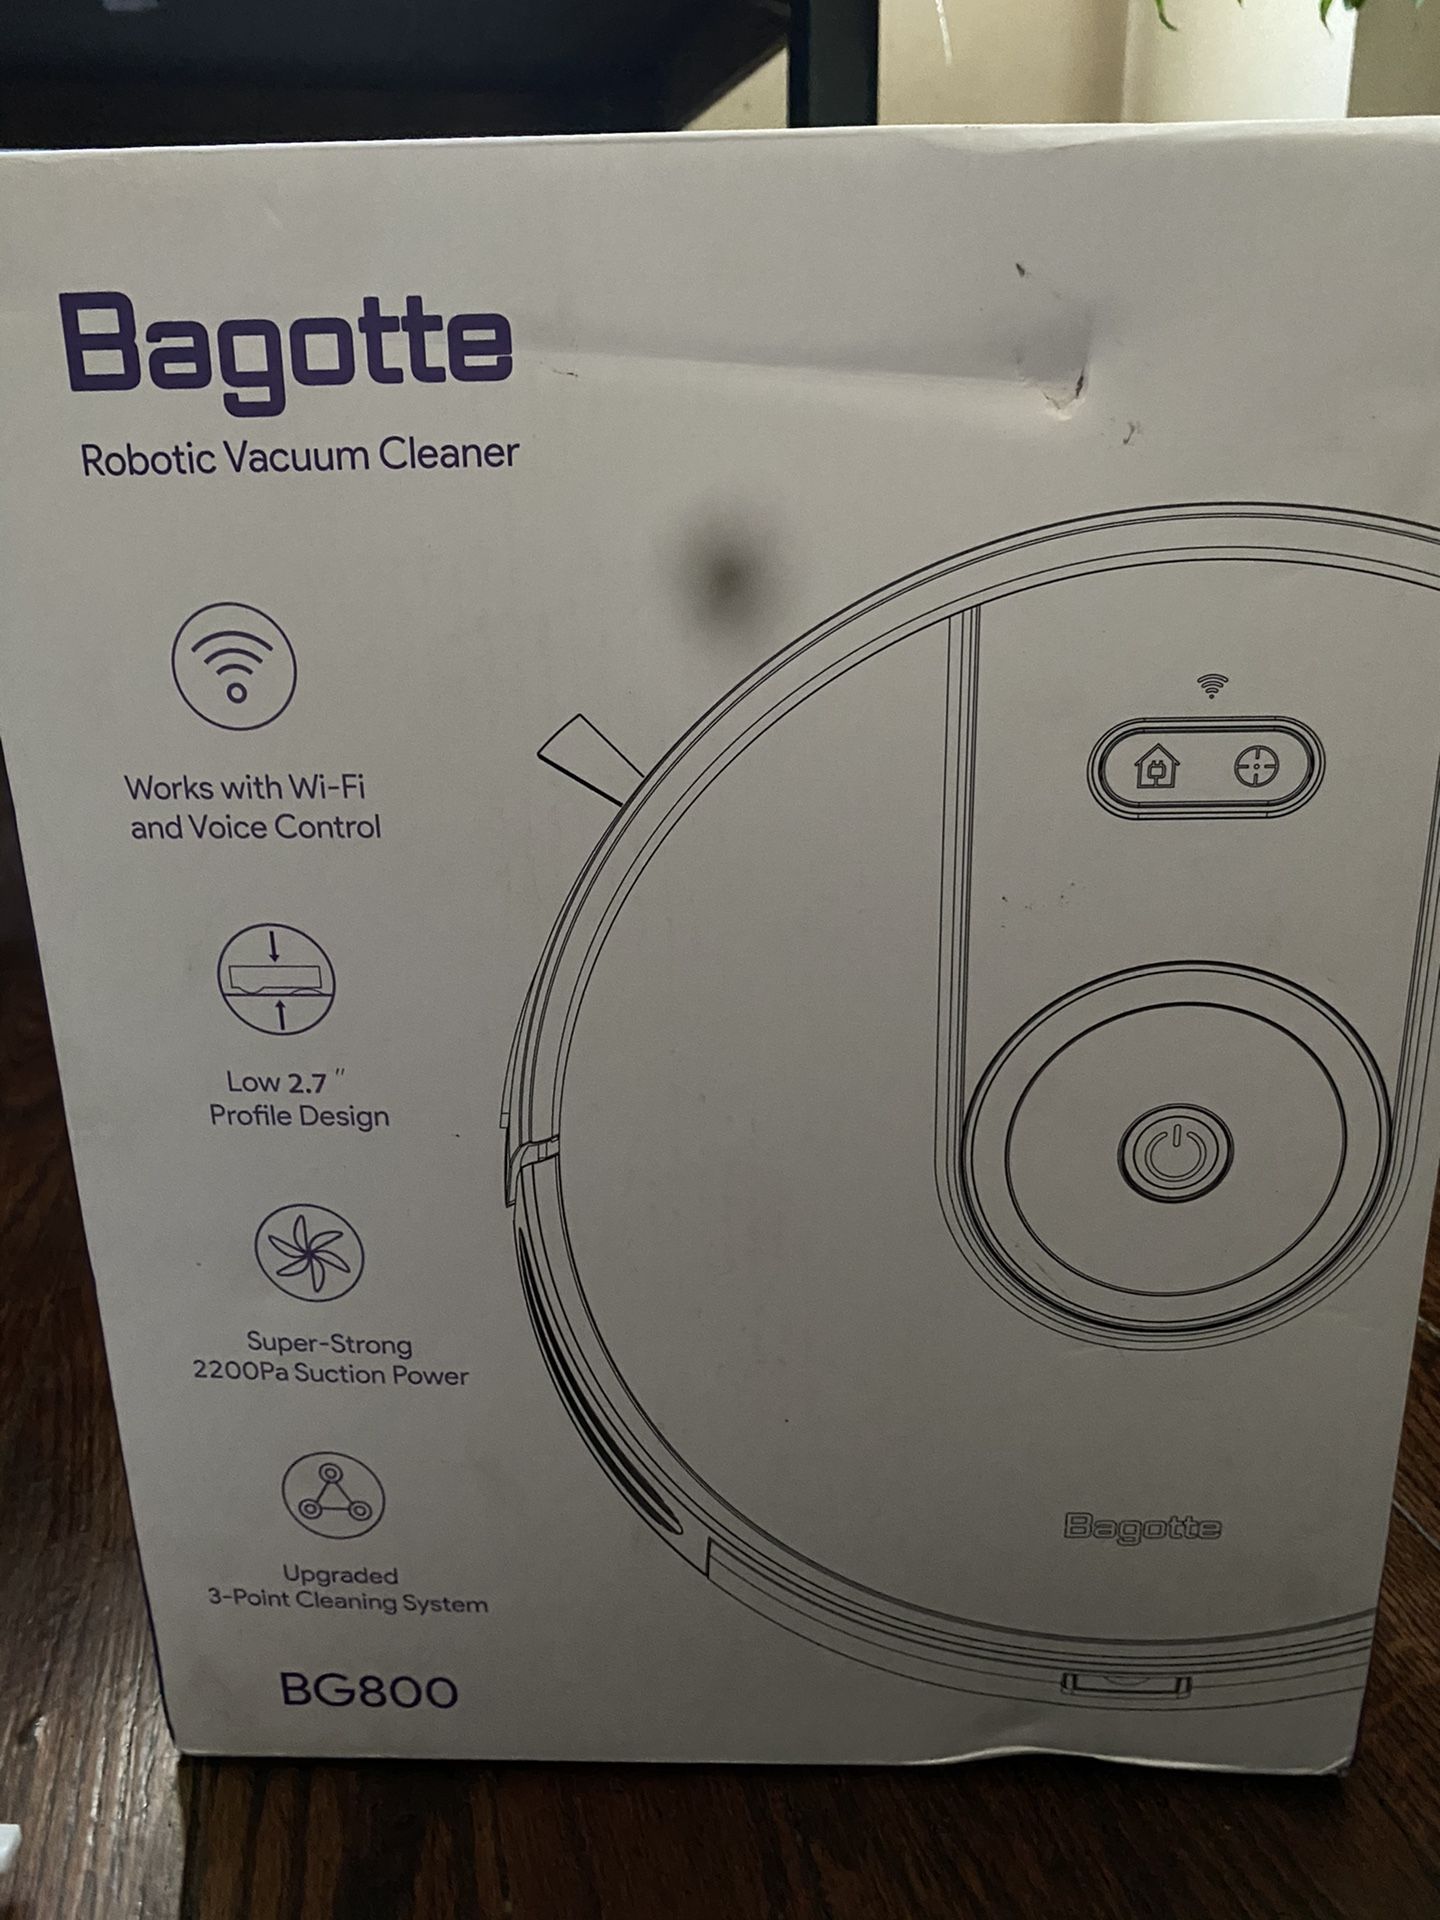 Bagotte Robotic Vacuum cleaner